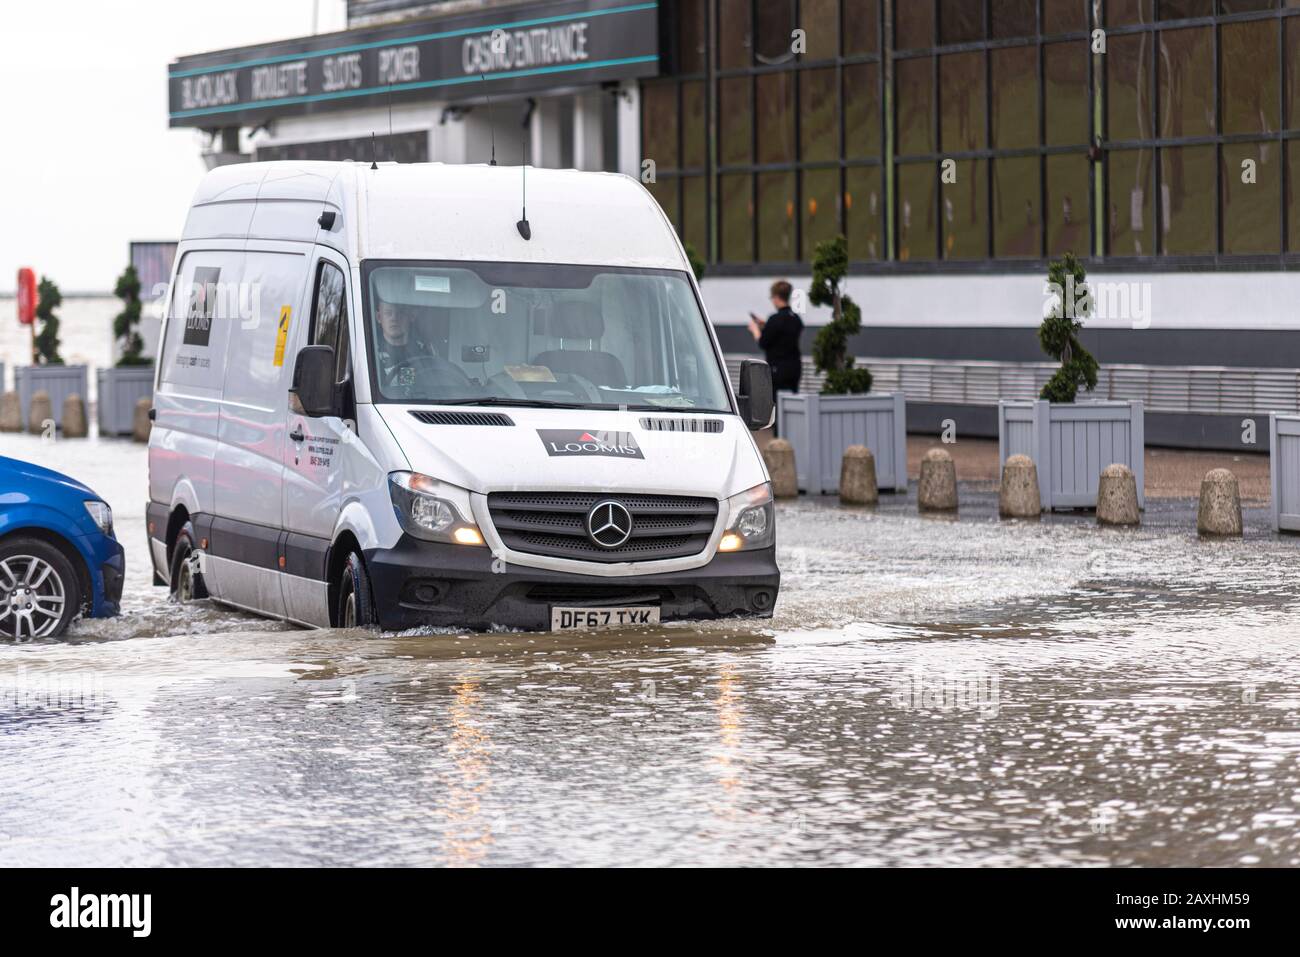 Loomis van in viaggio attraverso le inondazioni al di fuori di Genting Casino durante l'alta marea tempesta in seguito alla tempesta Ciara a Southend on Sea, Essex, UK Foto Stock